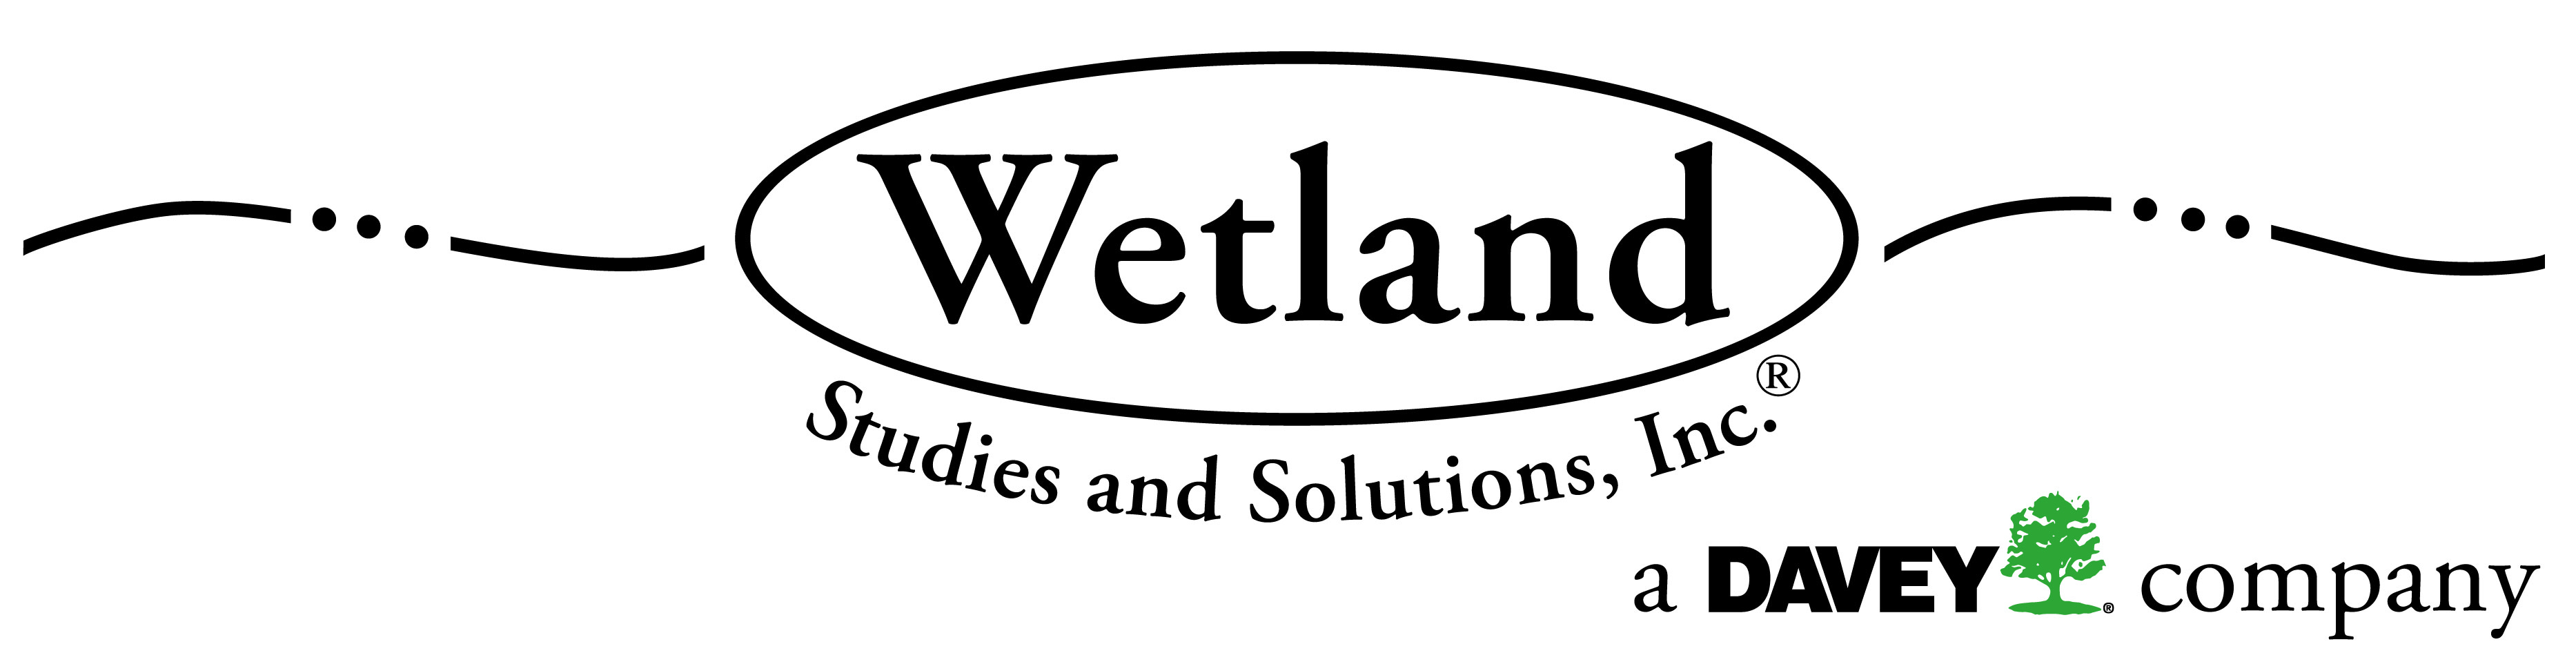 Wetland Studies